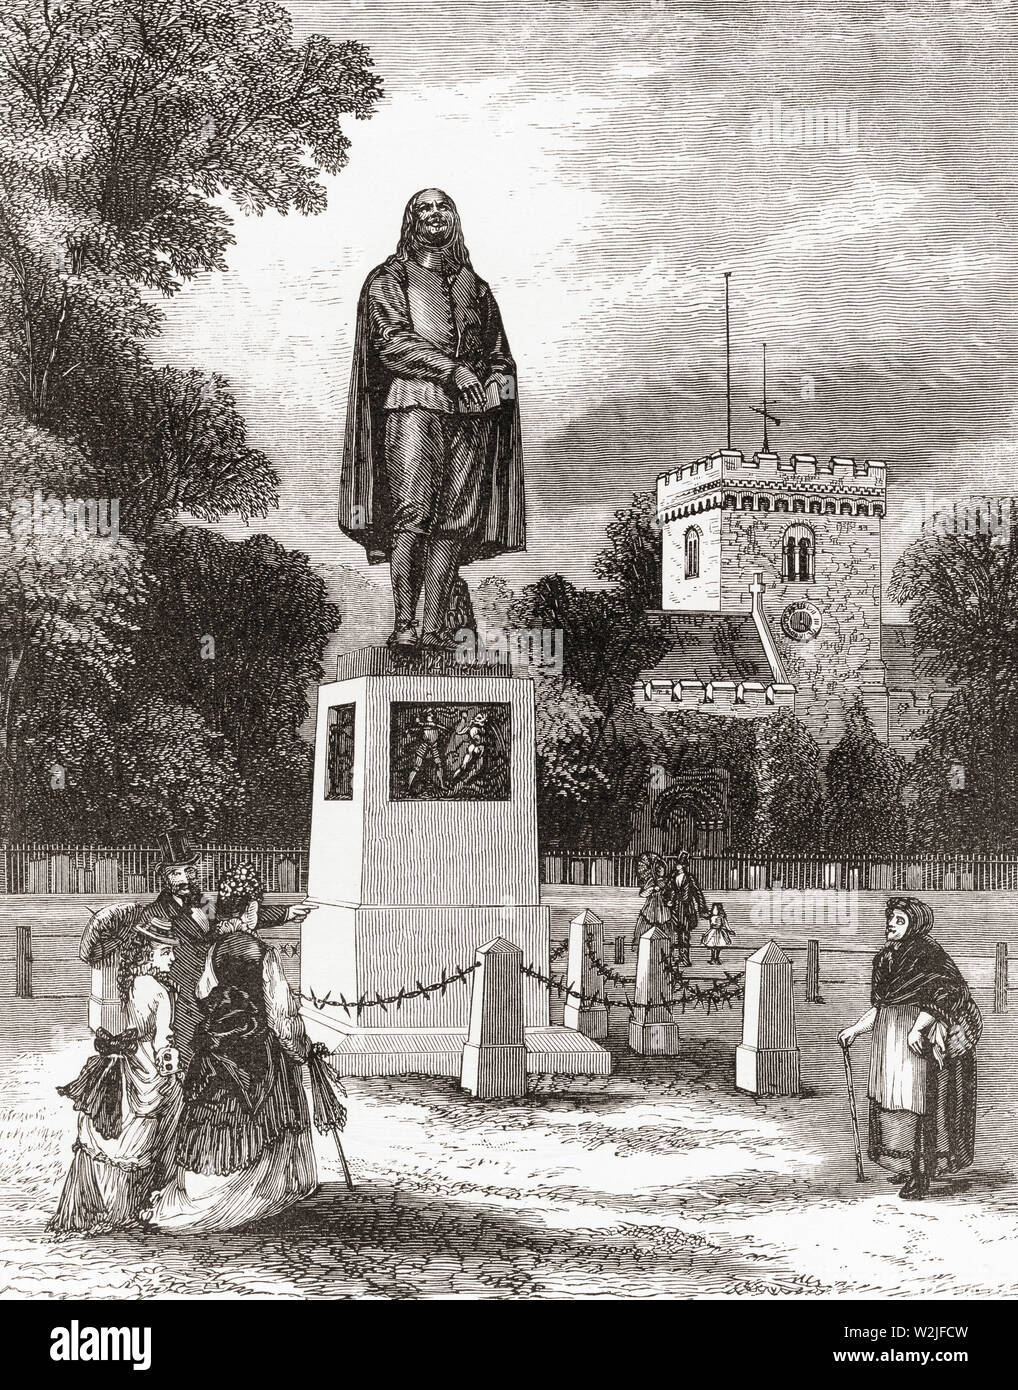 El Monumento Bunyan, Bedford, Bedfordshire, Inglaterra, visto aquí en el siglo XIX. John Bunyan, 1628 - 1688. Escritor inglés y predicador puritano. Fotos de inglés, publicado el año 1890. Foto de stock